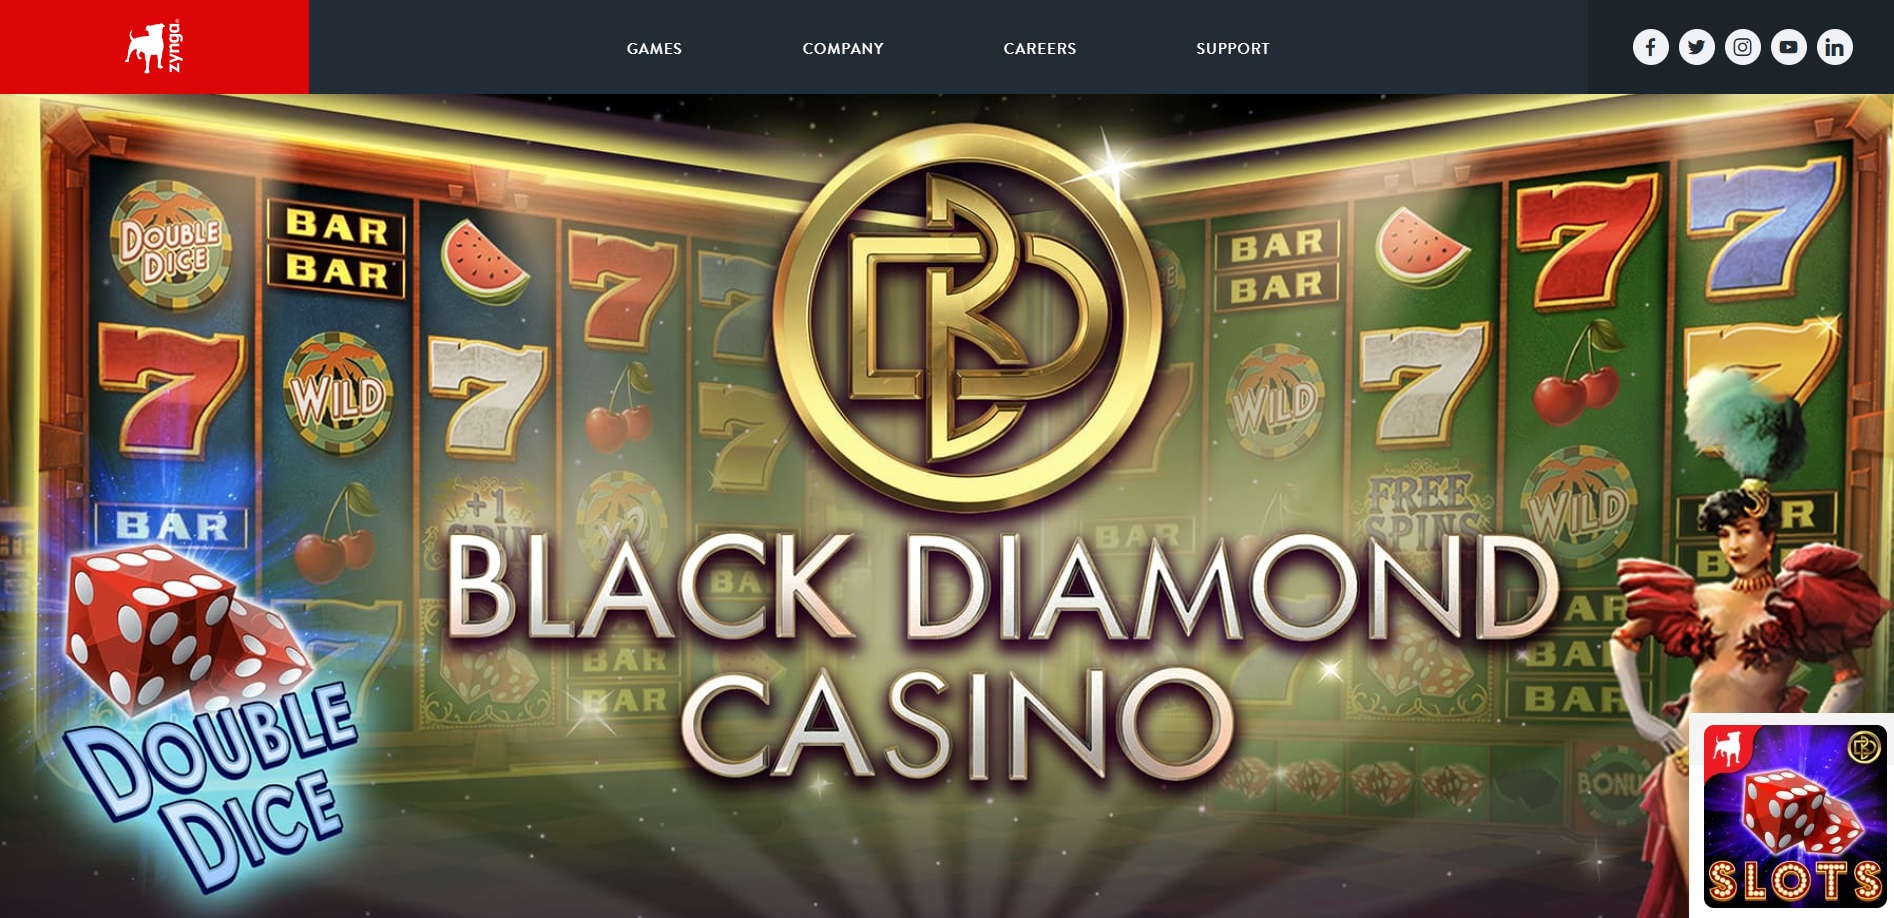 Zynga Black Diamond Casino Website Screenshot